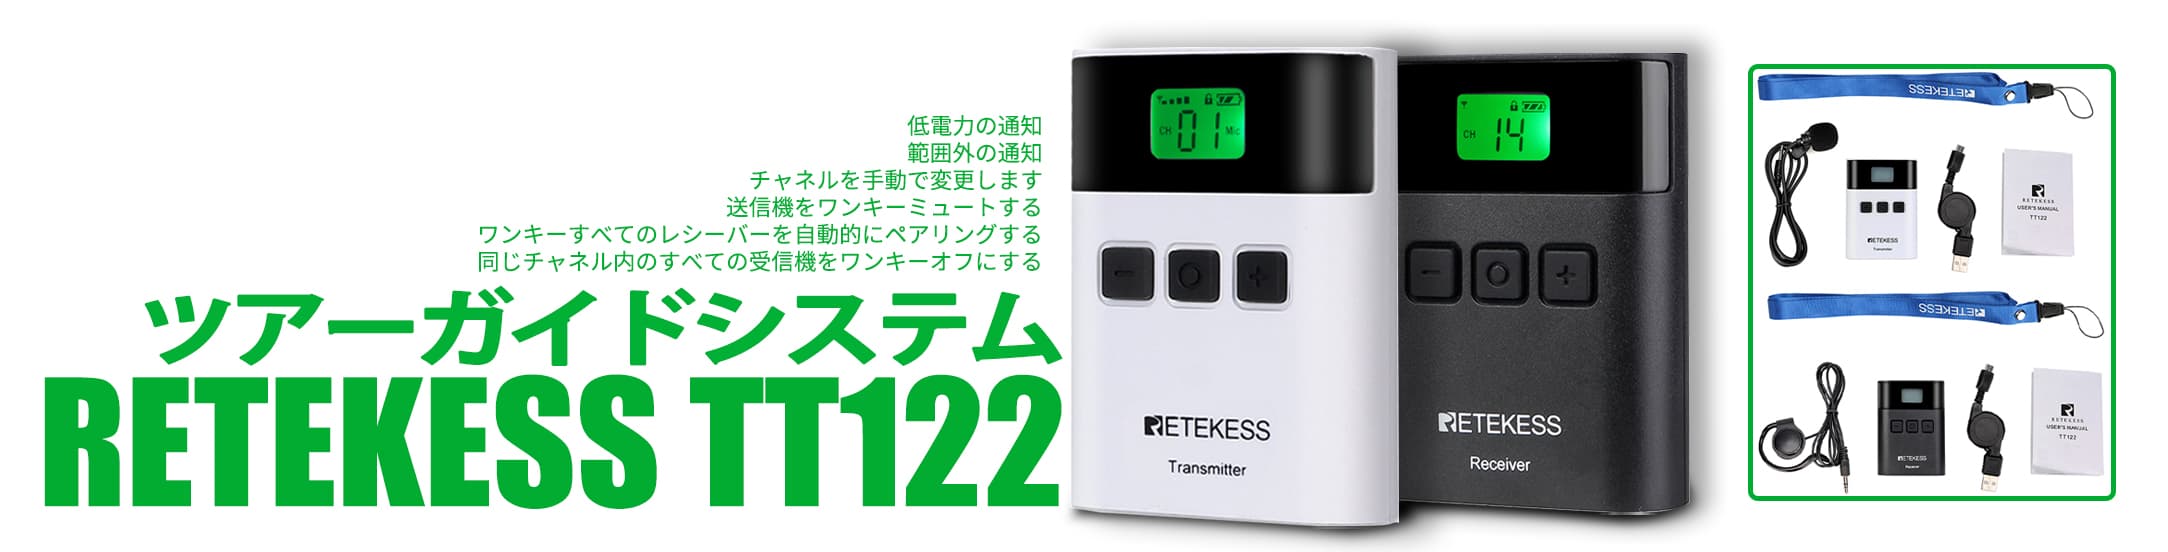 retekess-tt122-ツアーガイドシステム